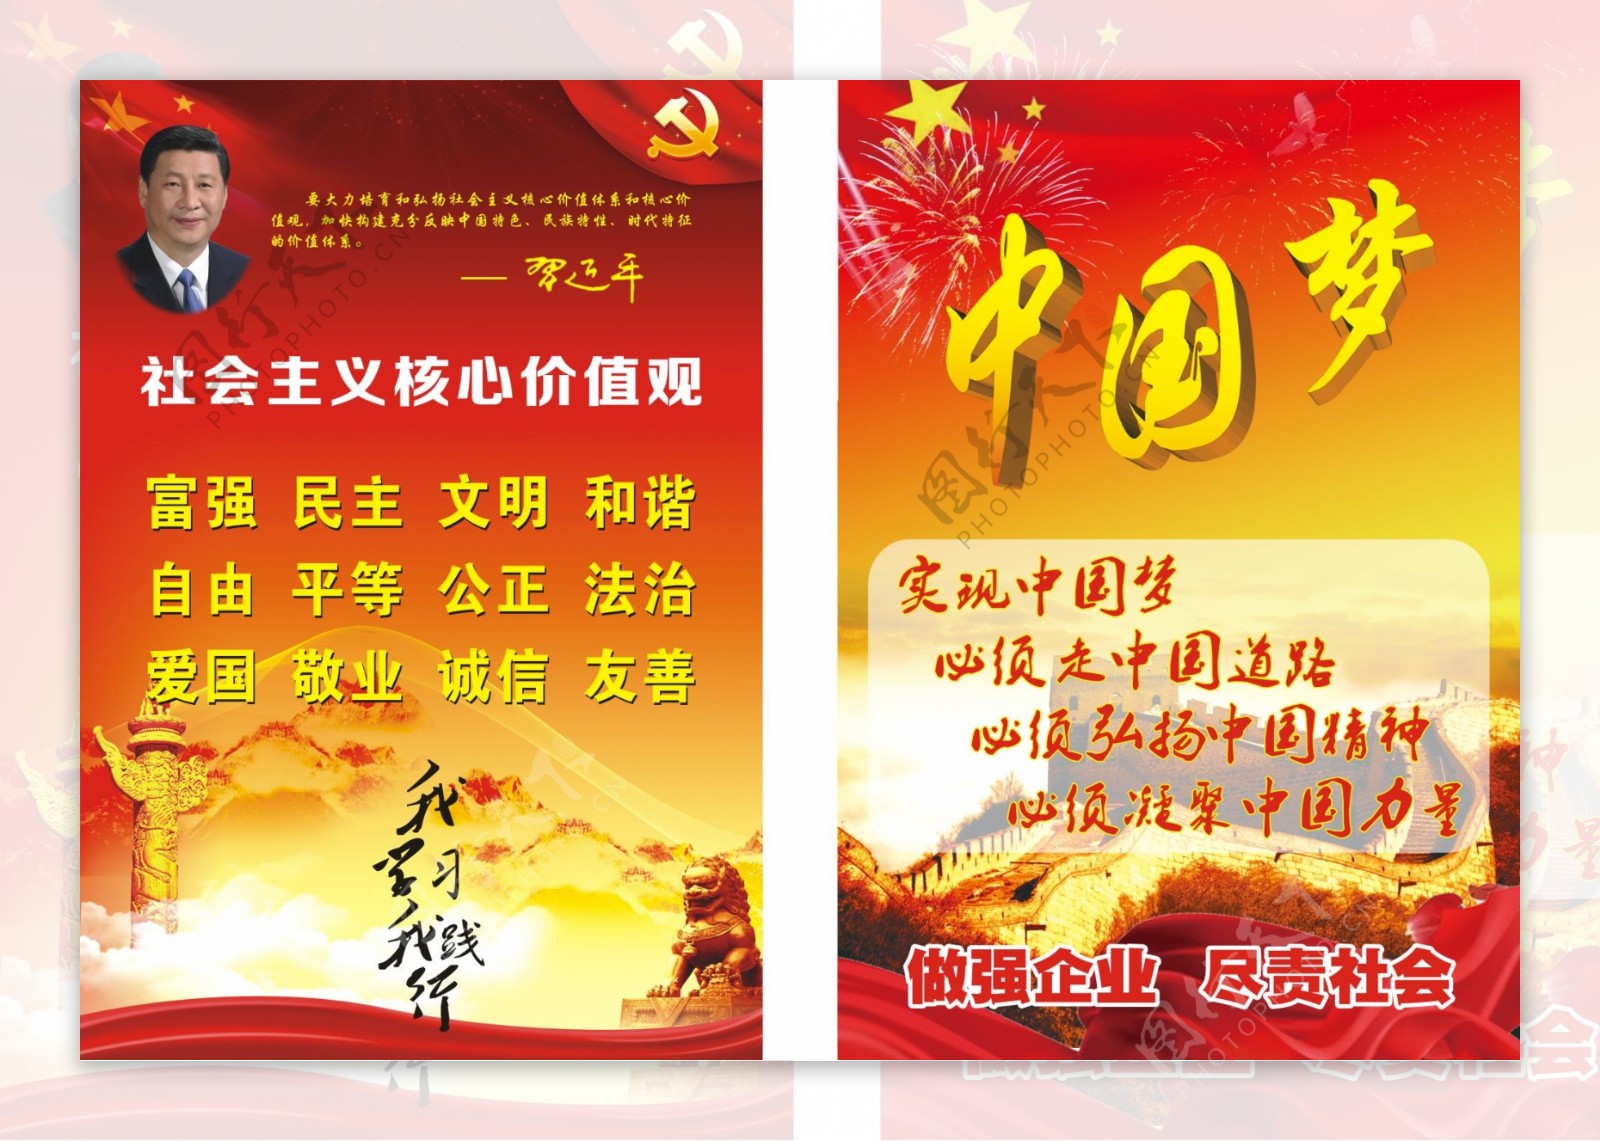 社会主义核心价值观和中国梦